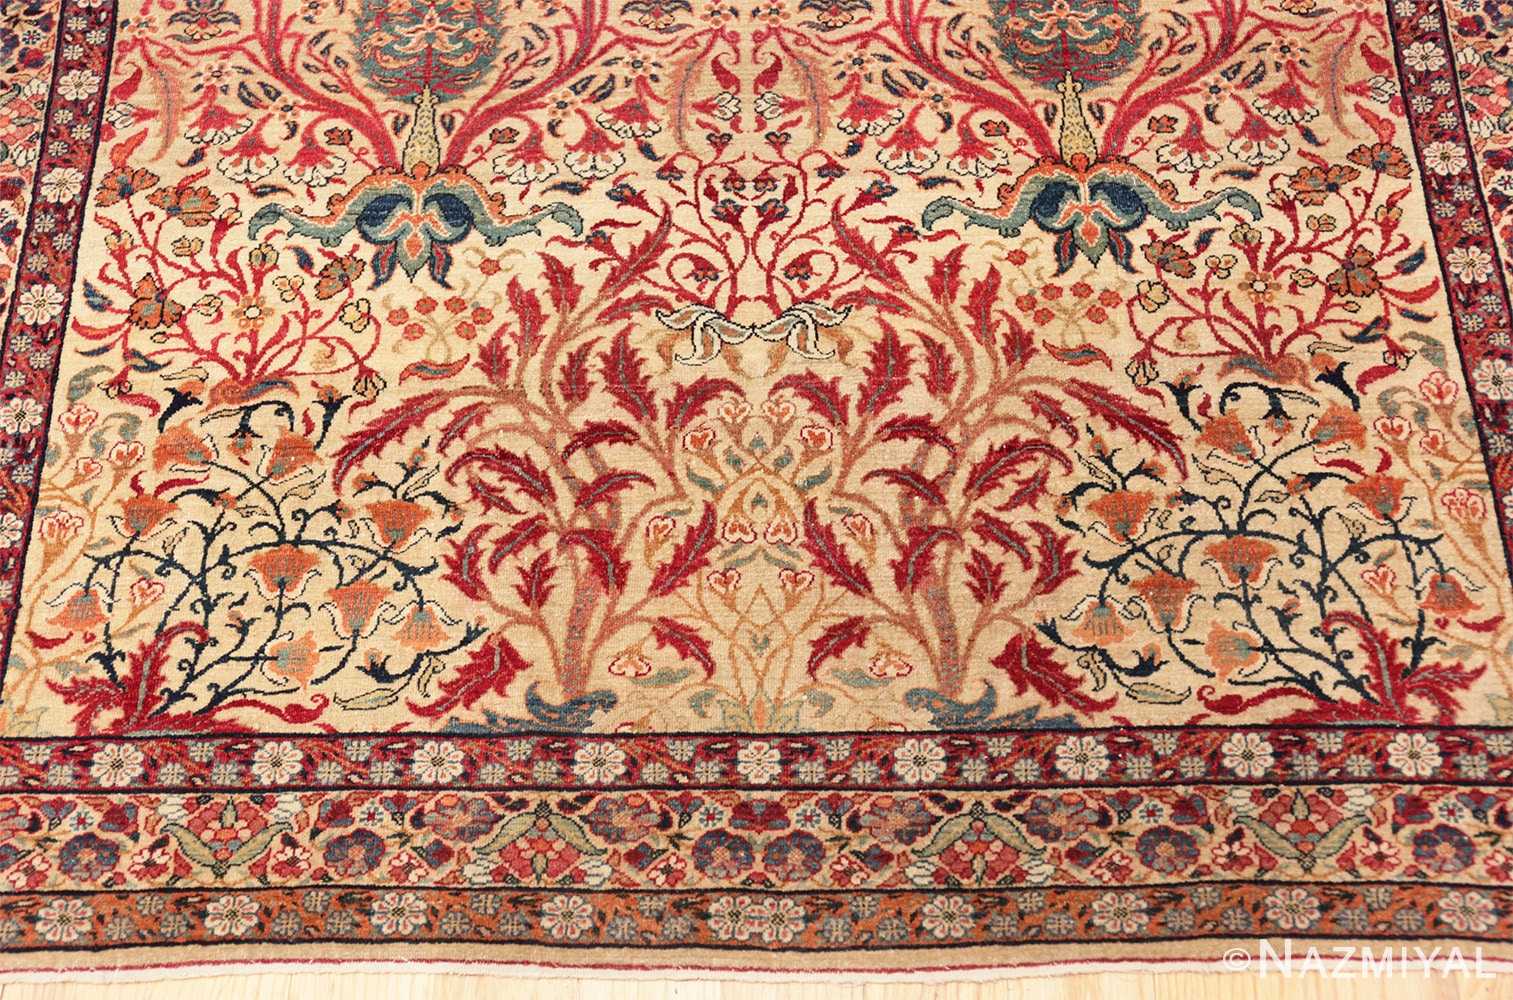 Border Antique Kerman Persian rug 70124 by Nazmiyal